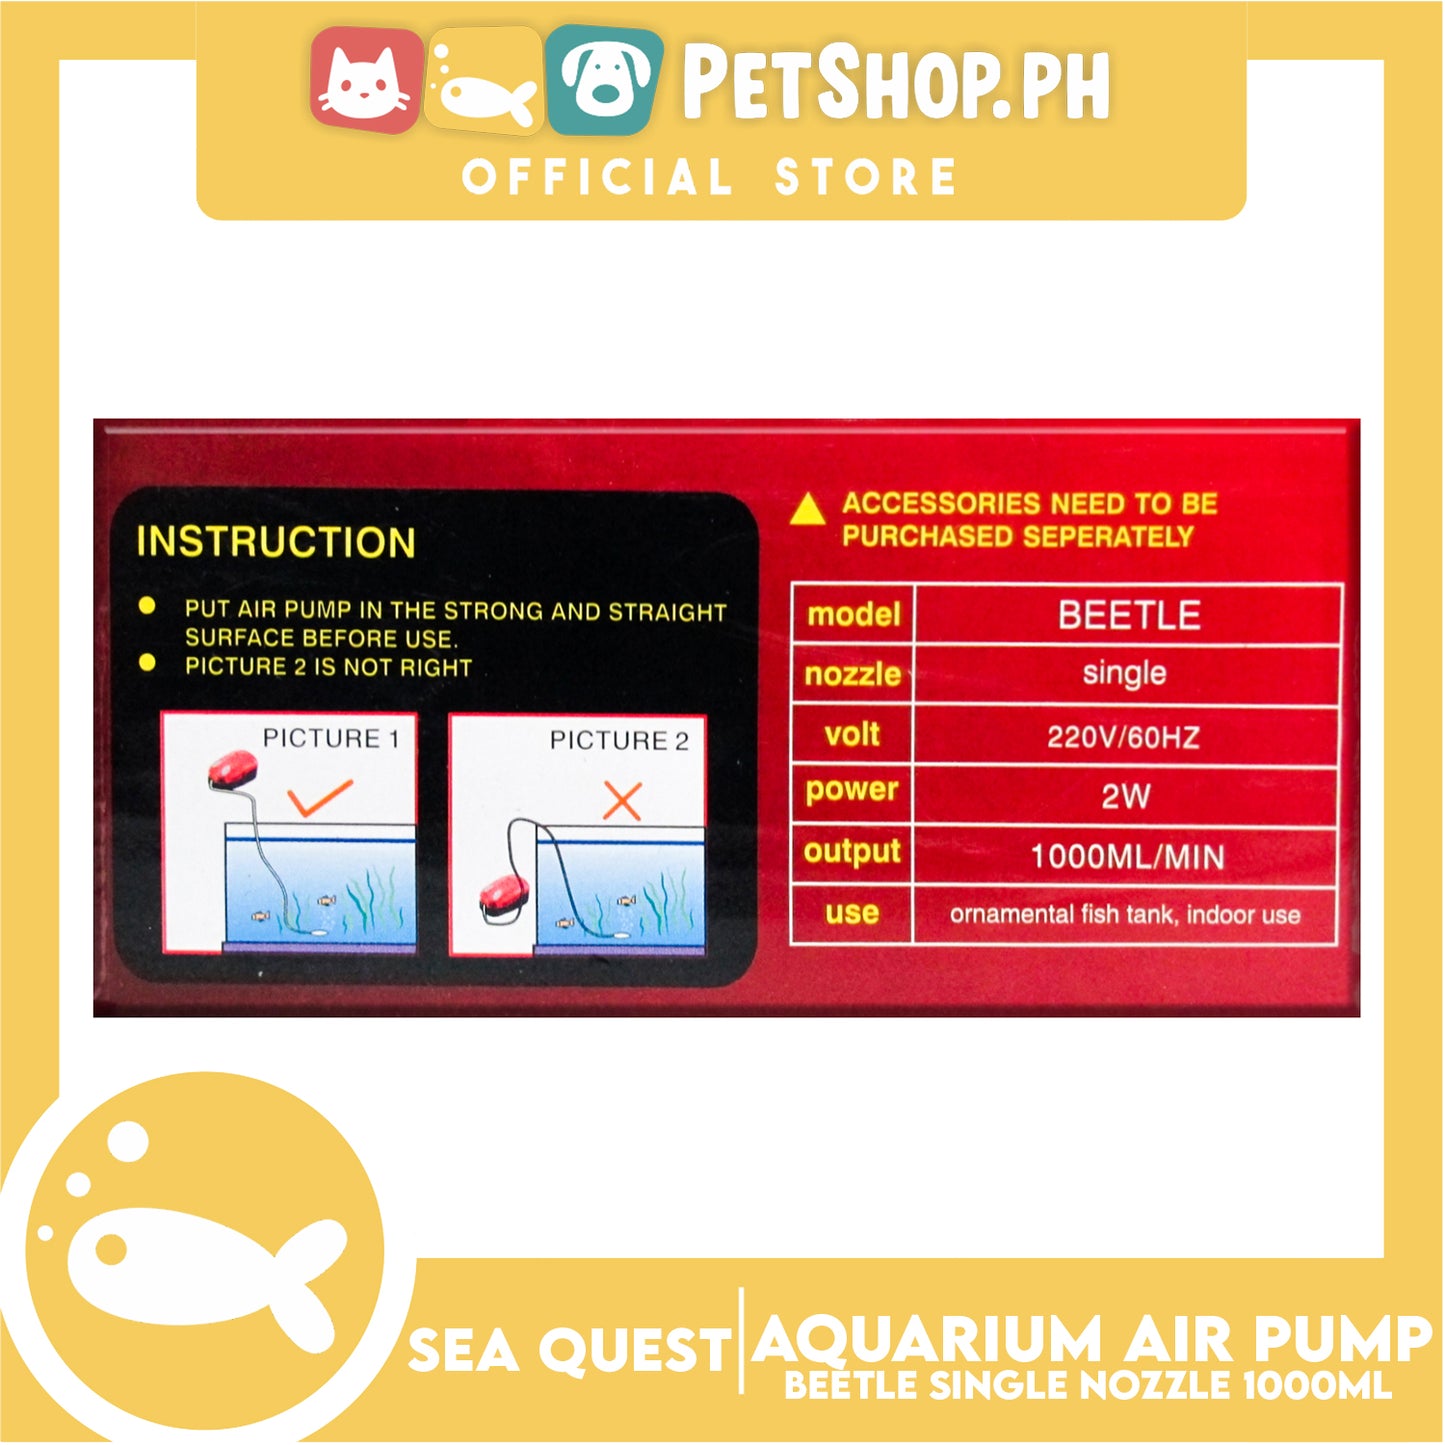 Sea Quest Beetle Aquarium Air Pump Single Nozzle (Red)